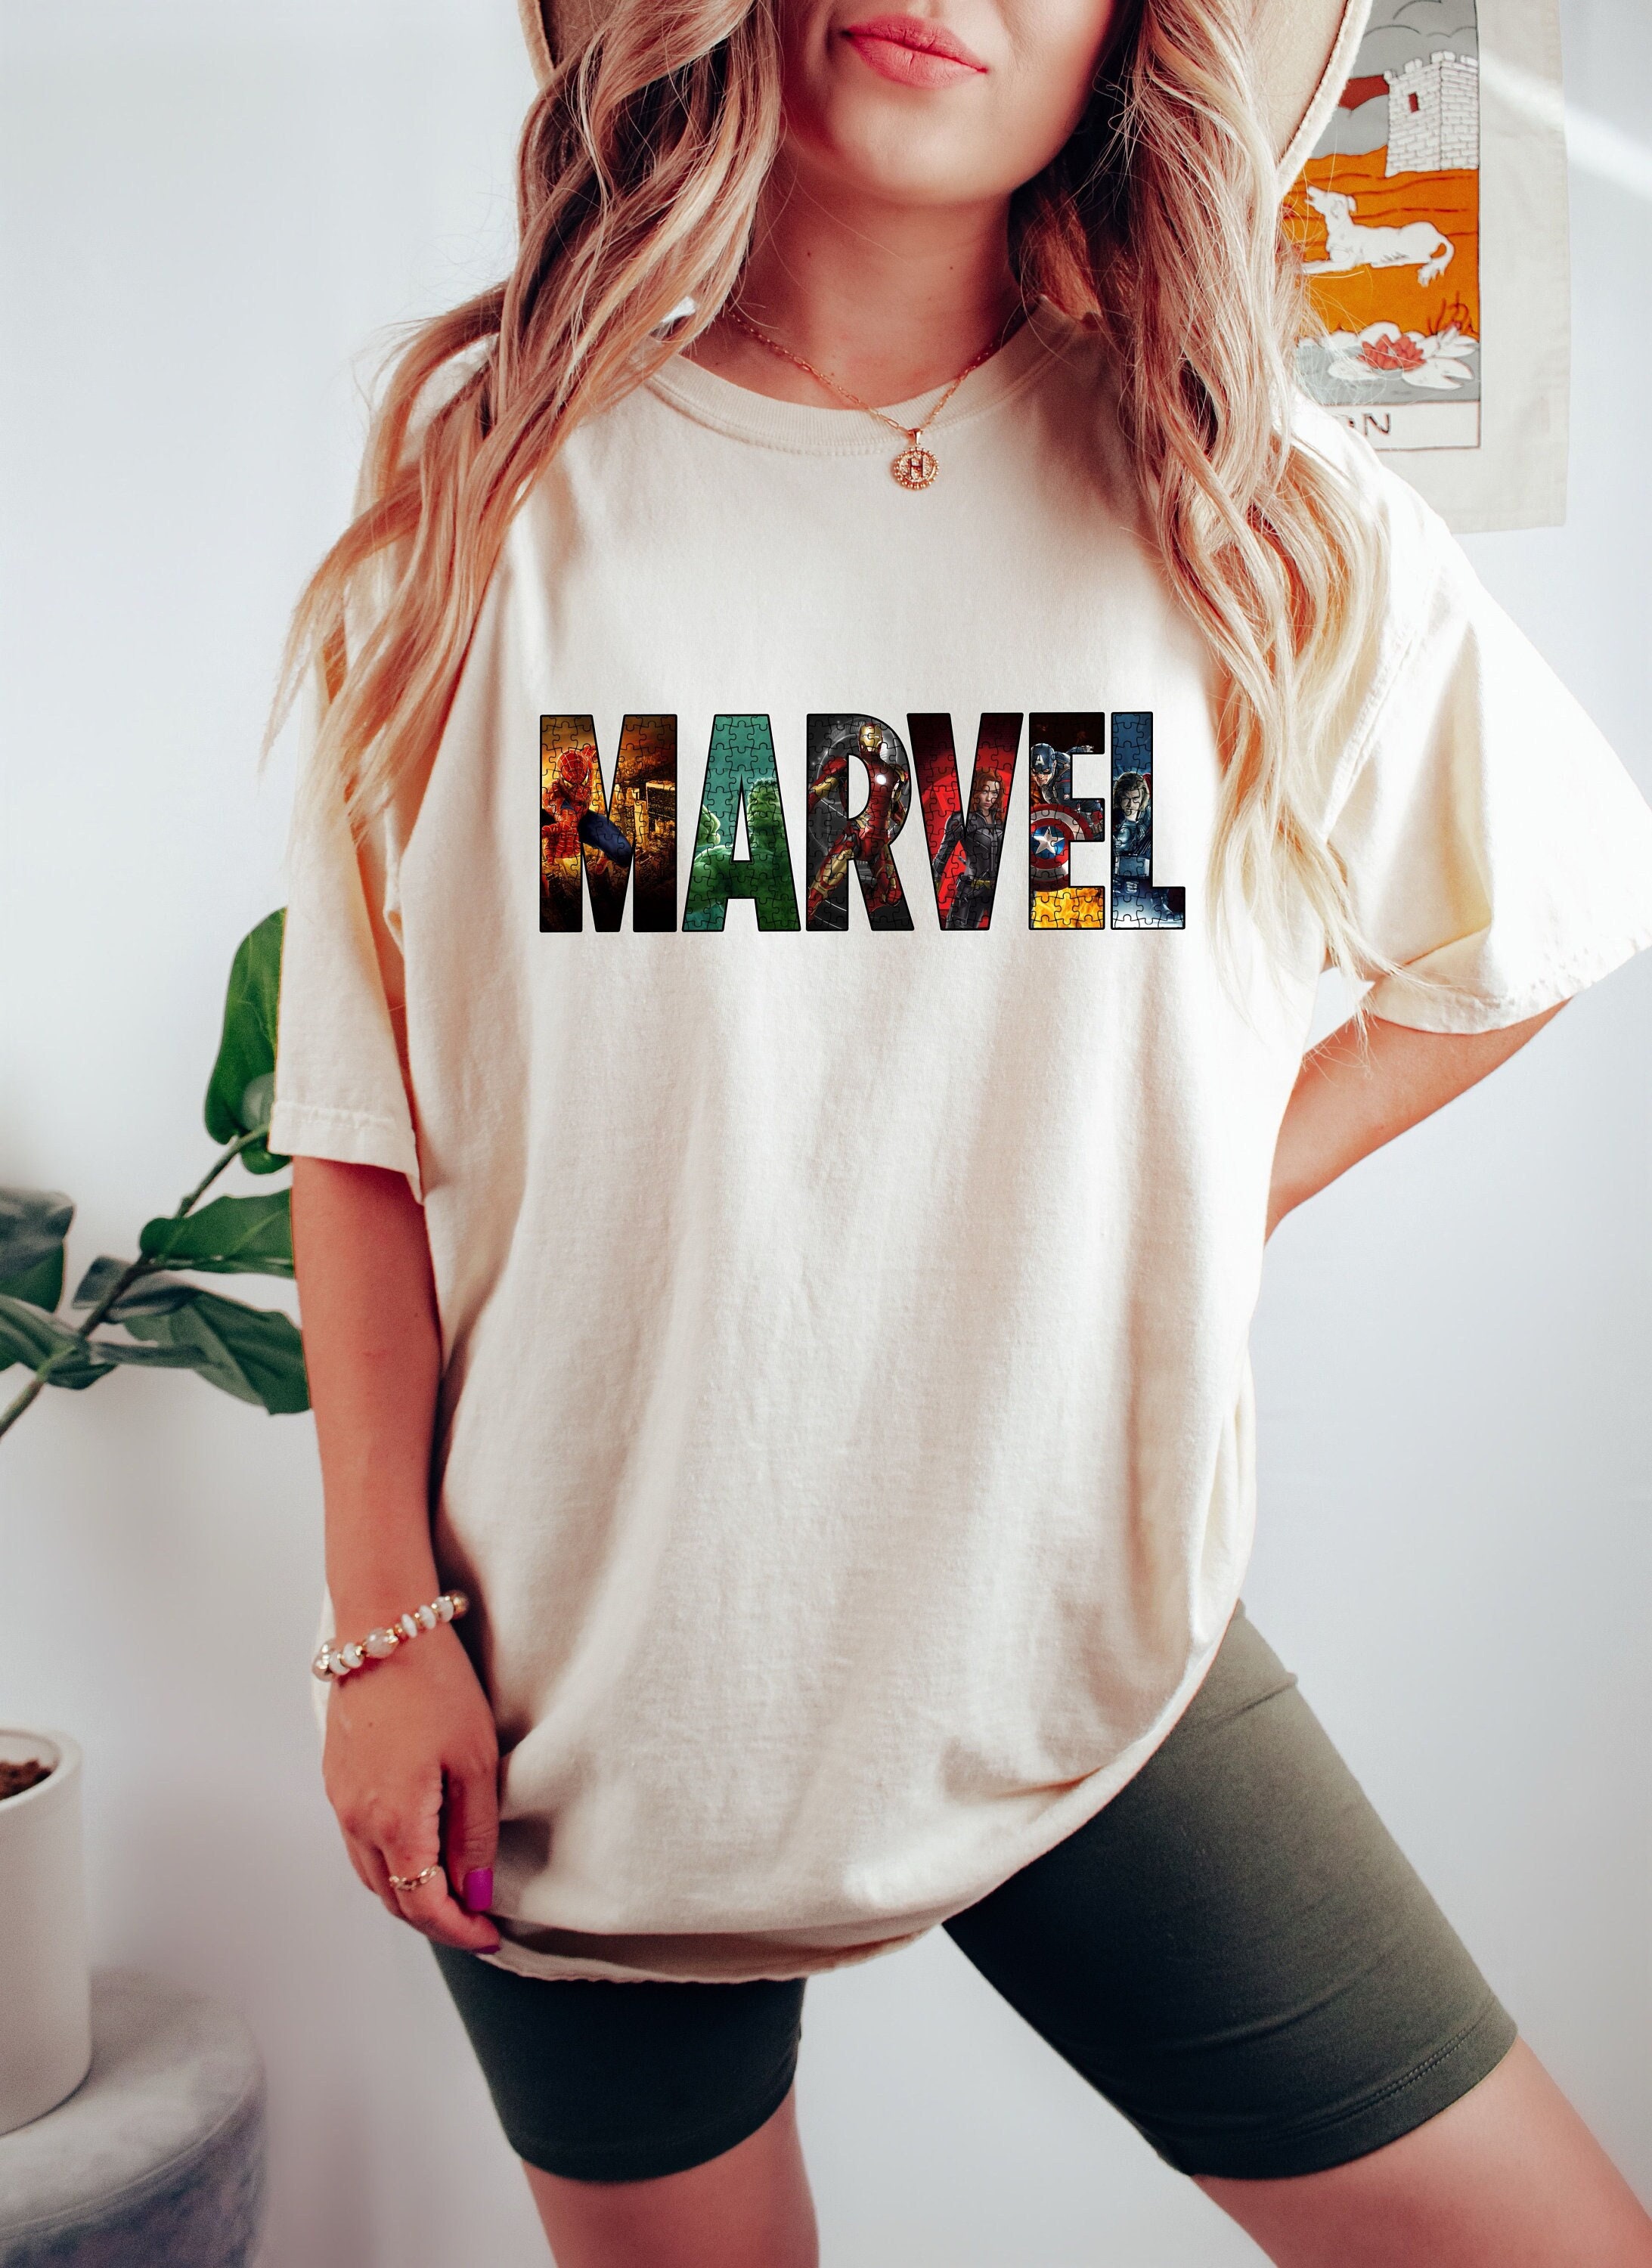 Avengers Shirt Women - Etsy